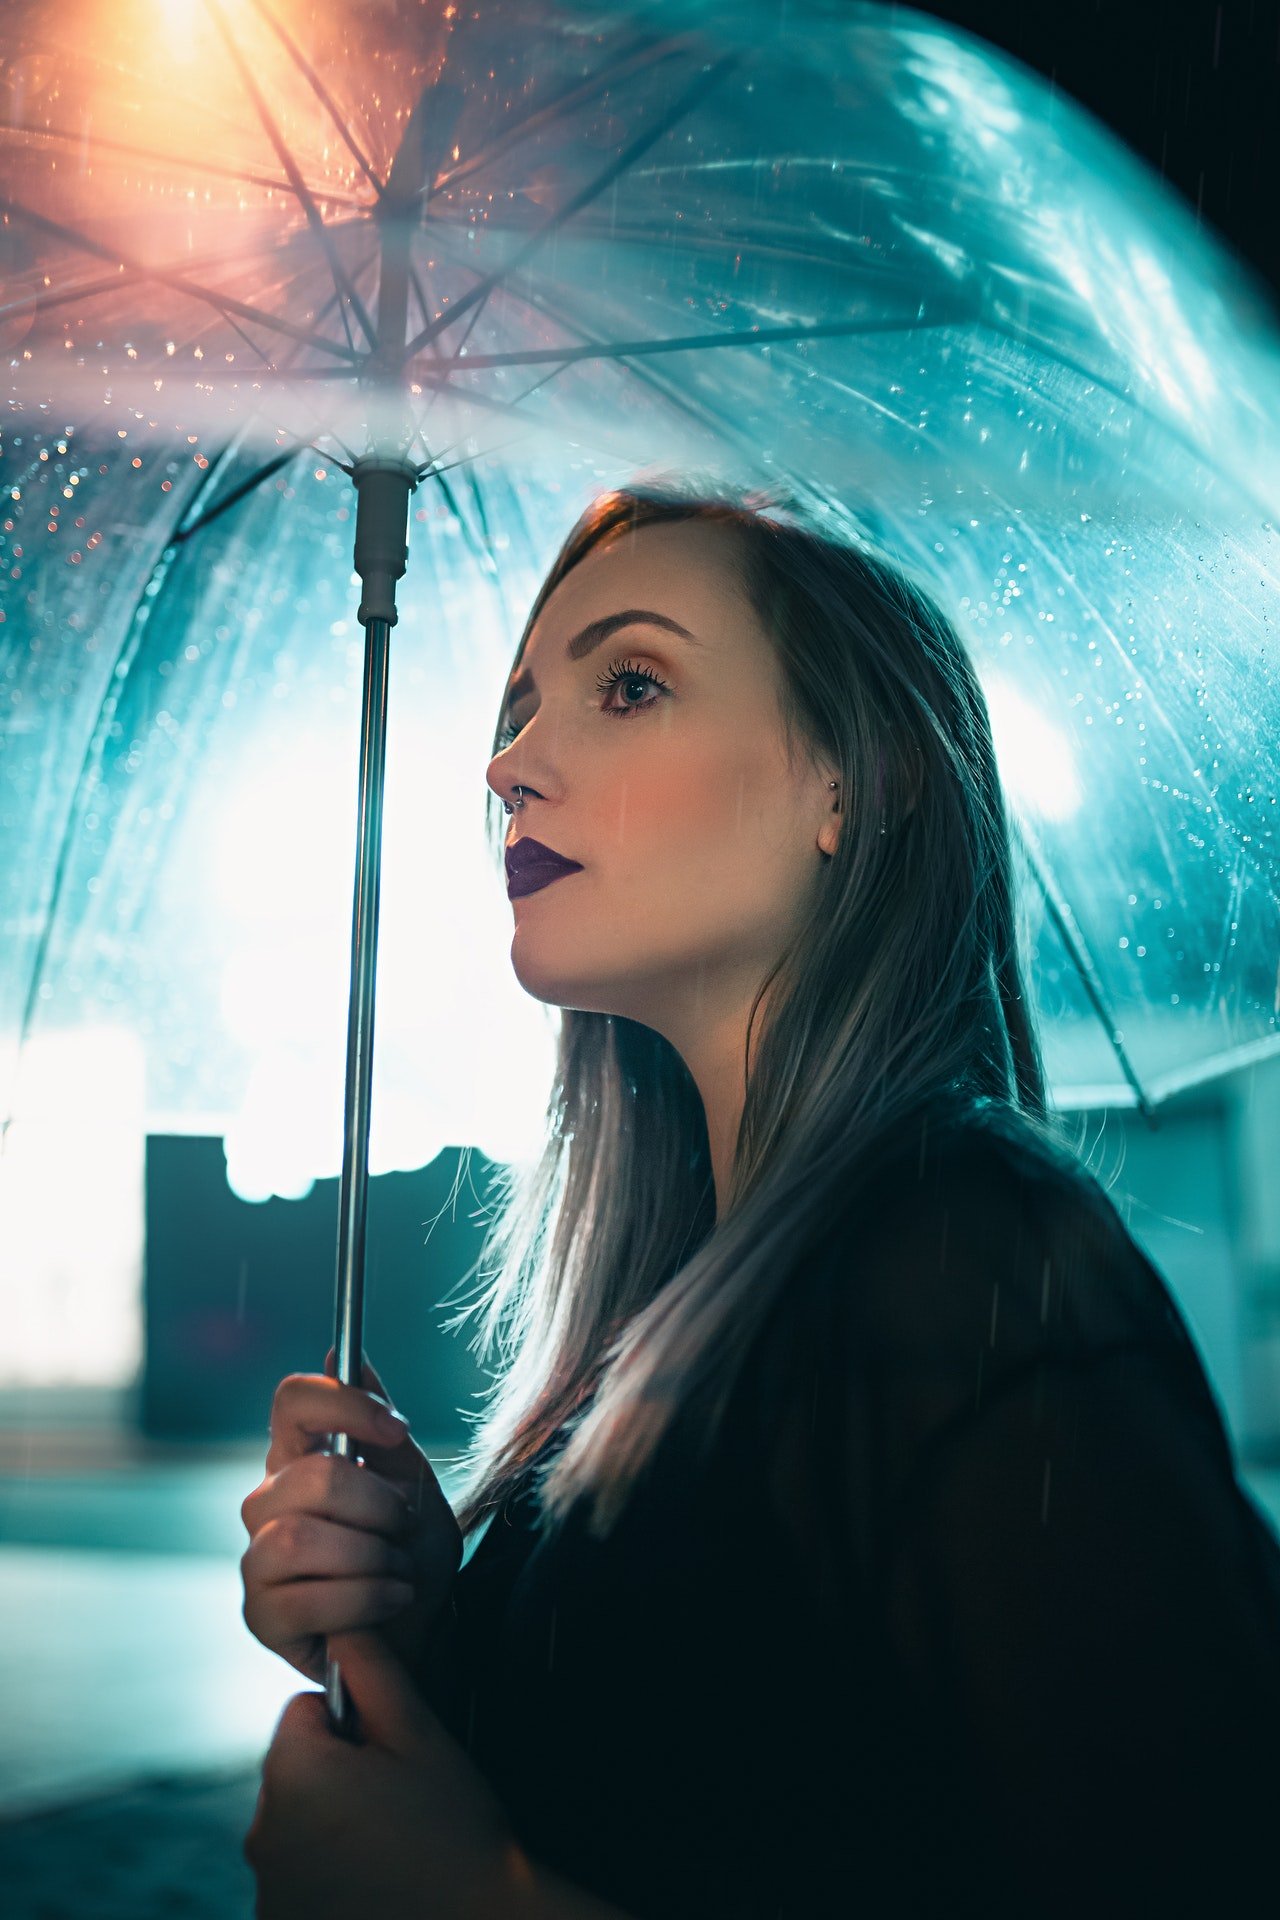 Sarah ging mit einem Regenschirm hinaus, um die Dinge zu überprüfen. | Quelle: Pexels